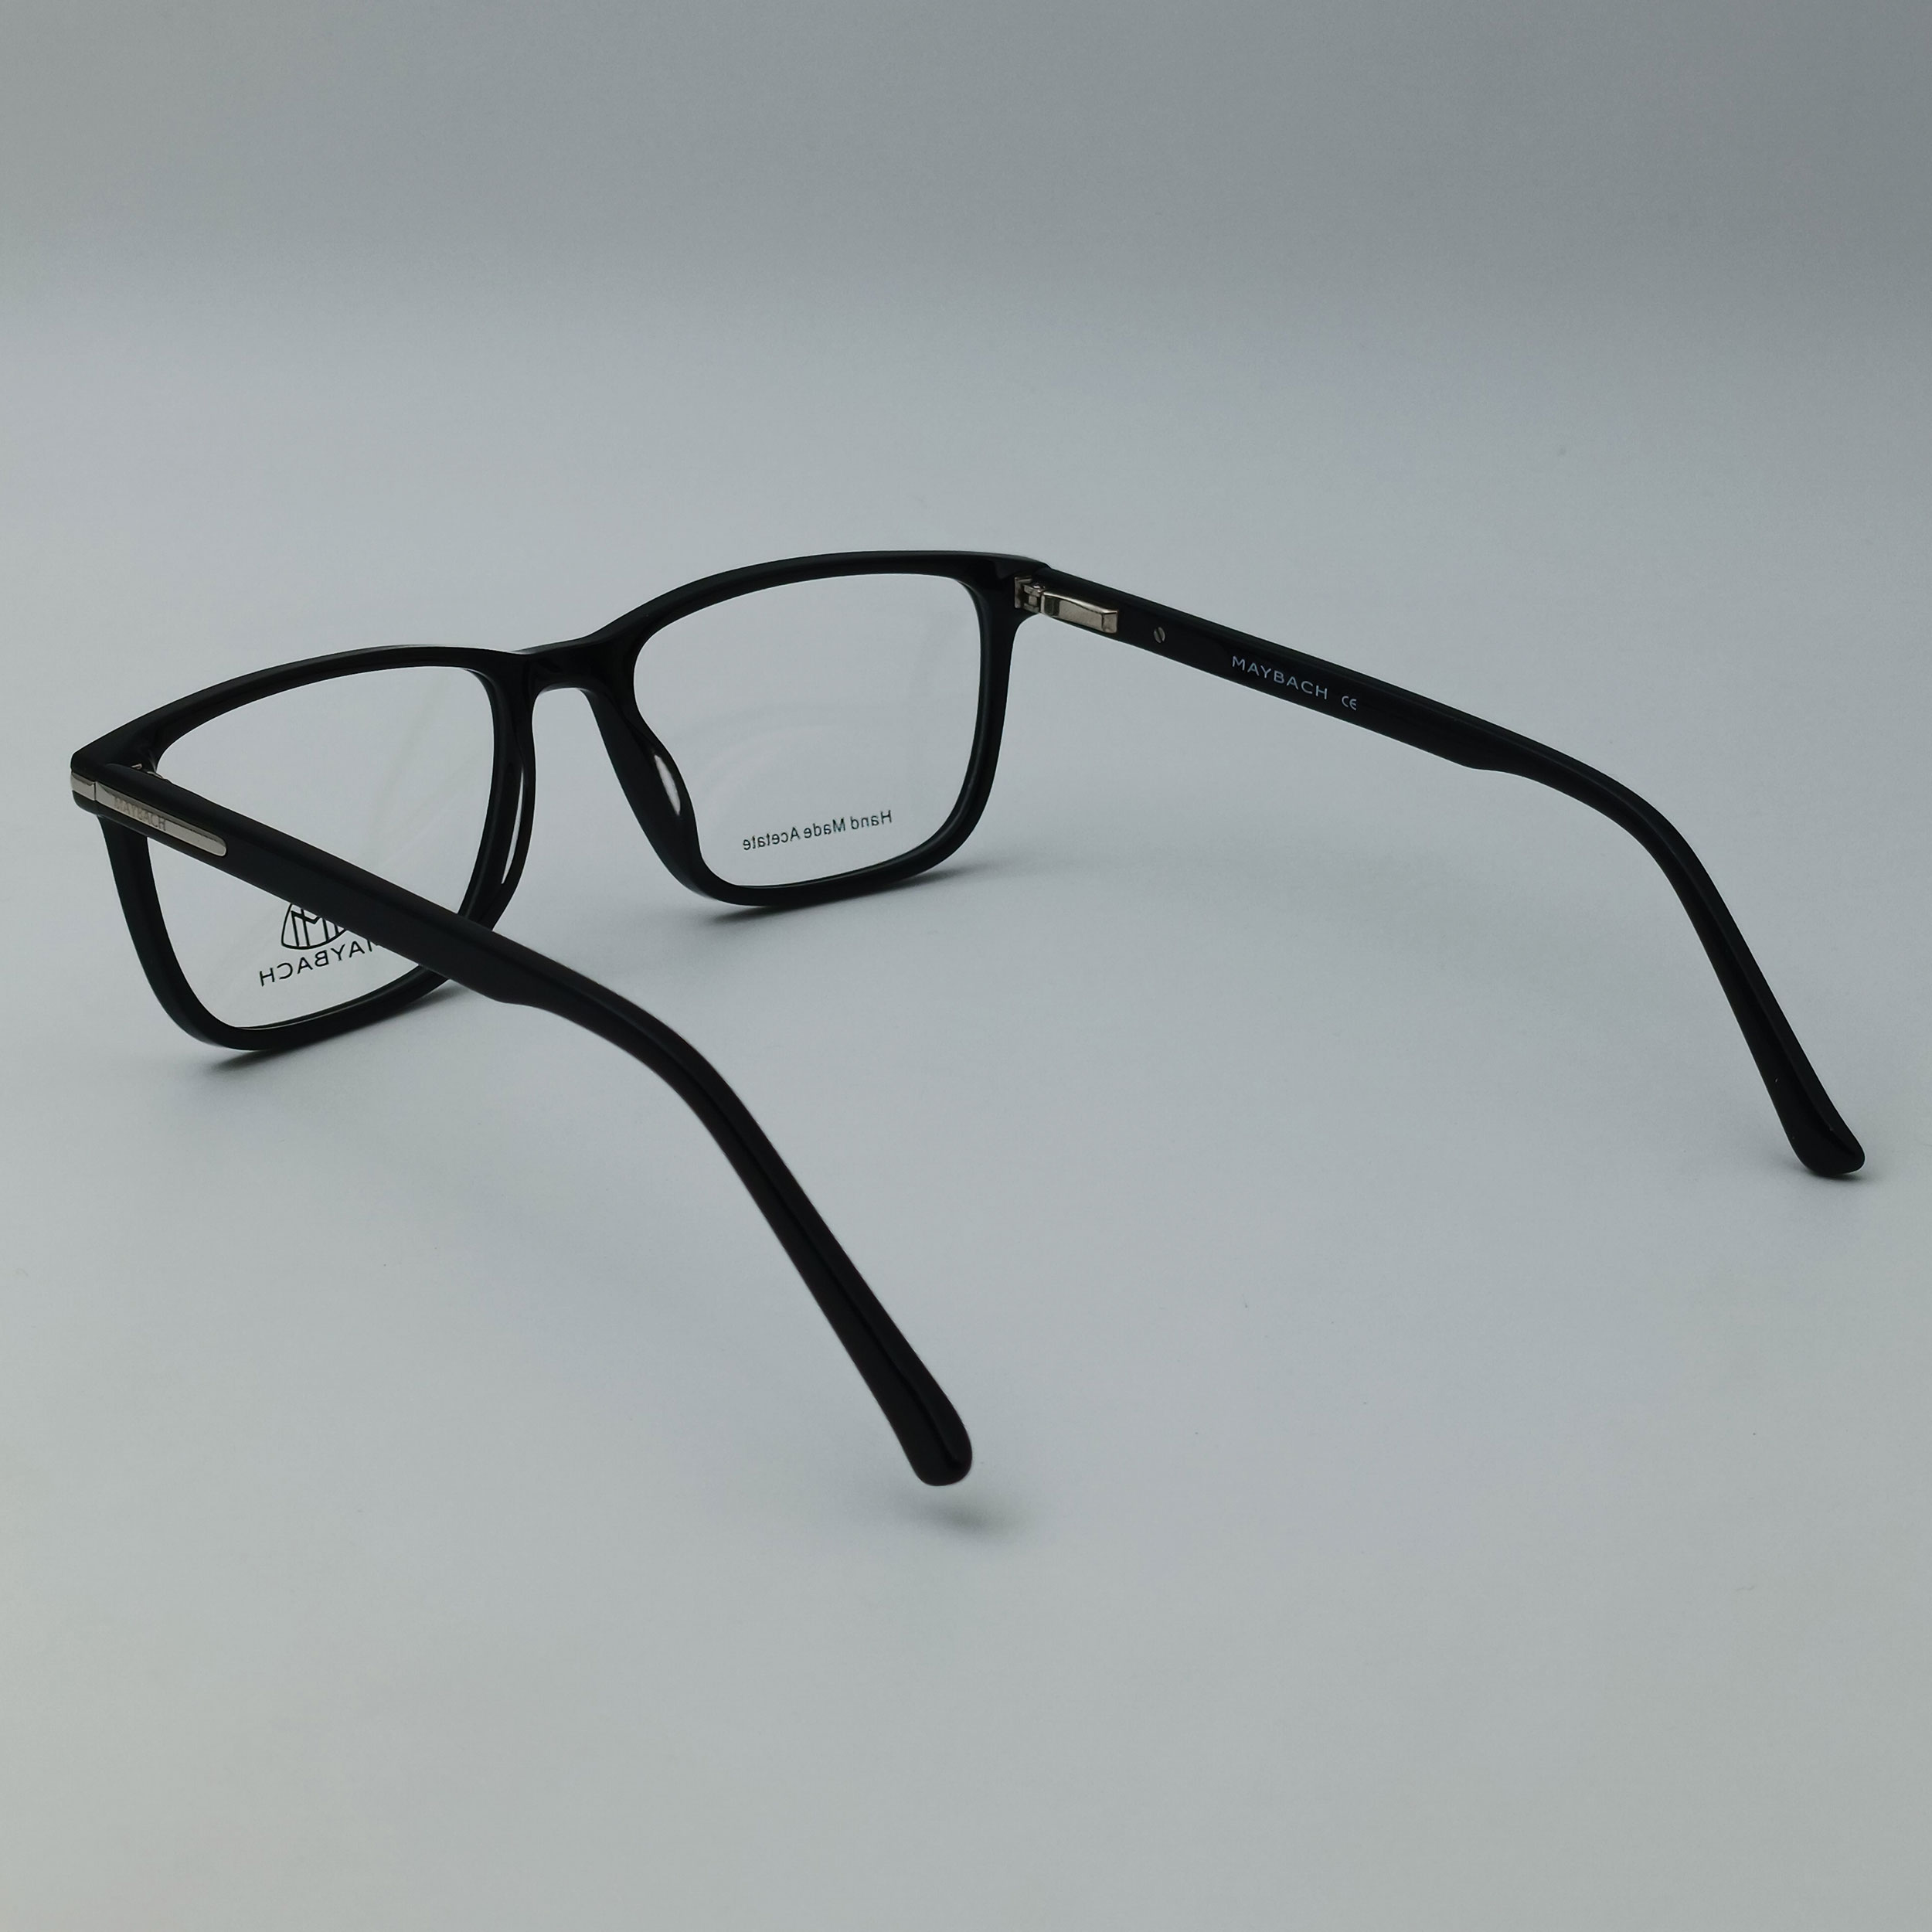 فریم عینک طبی میباخ مدل 6512 C1 -  - 5